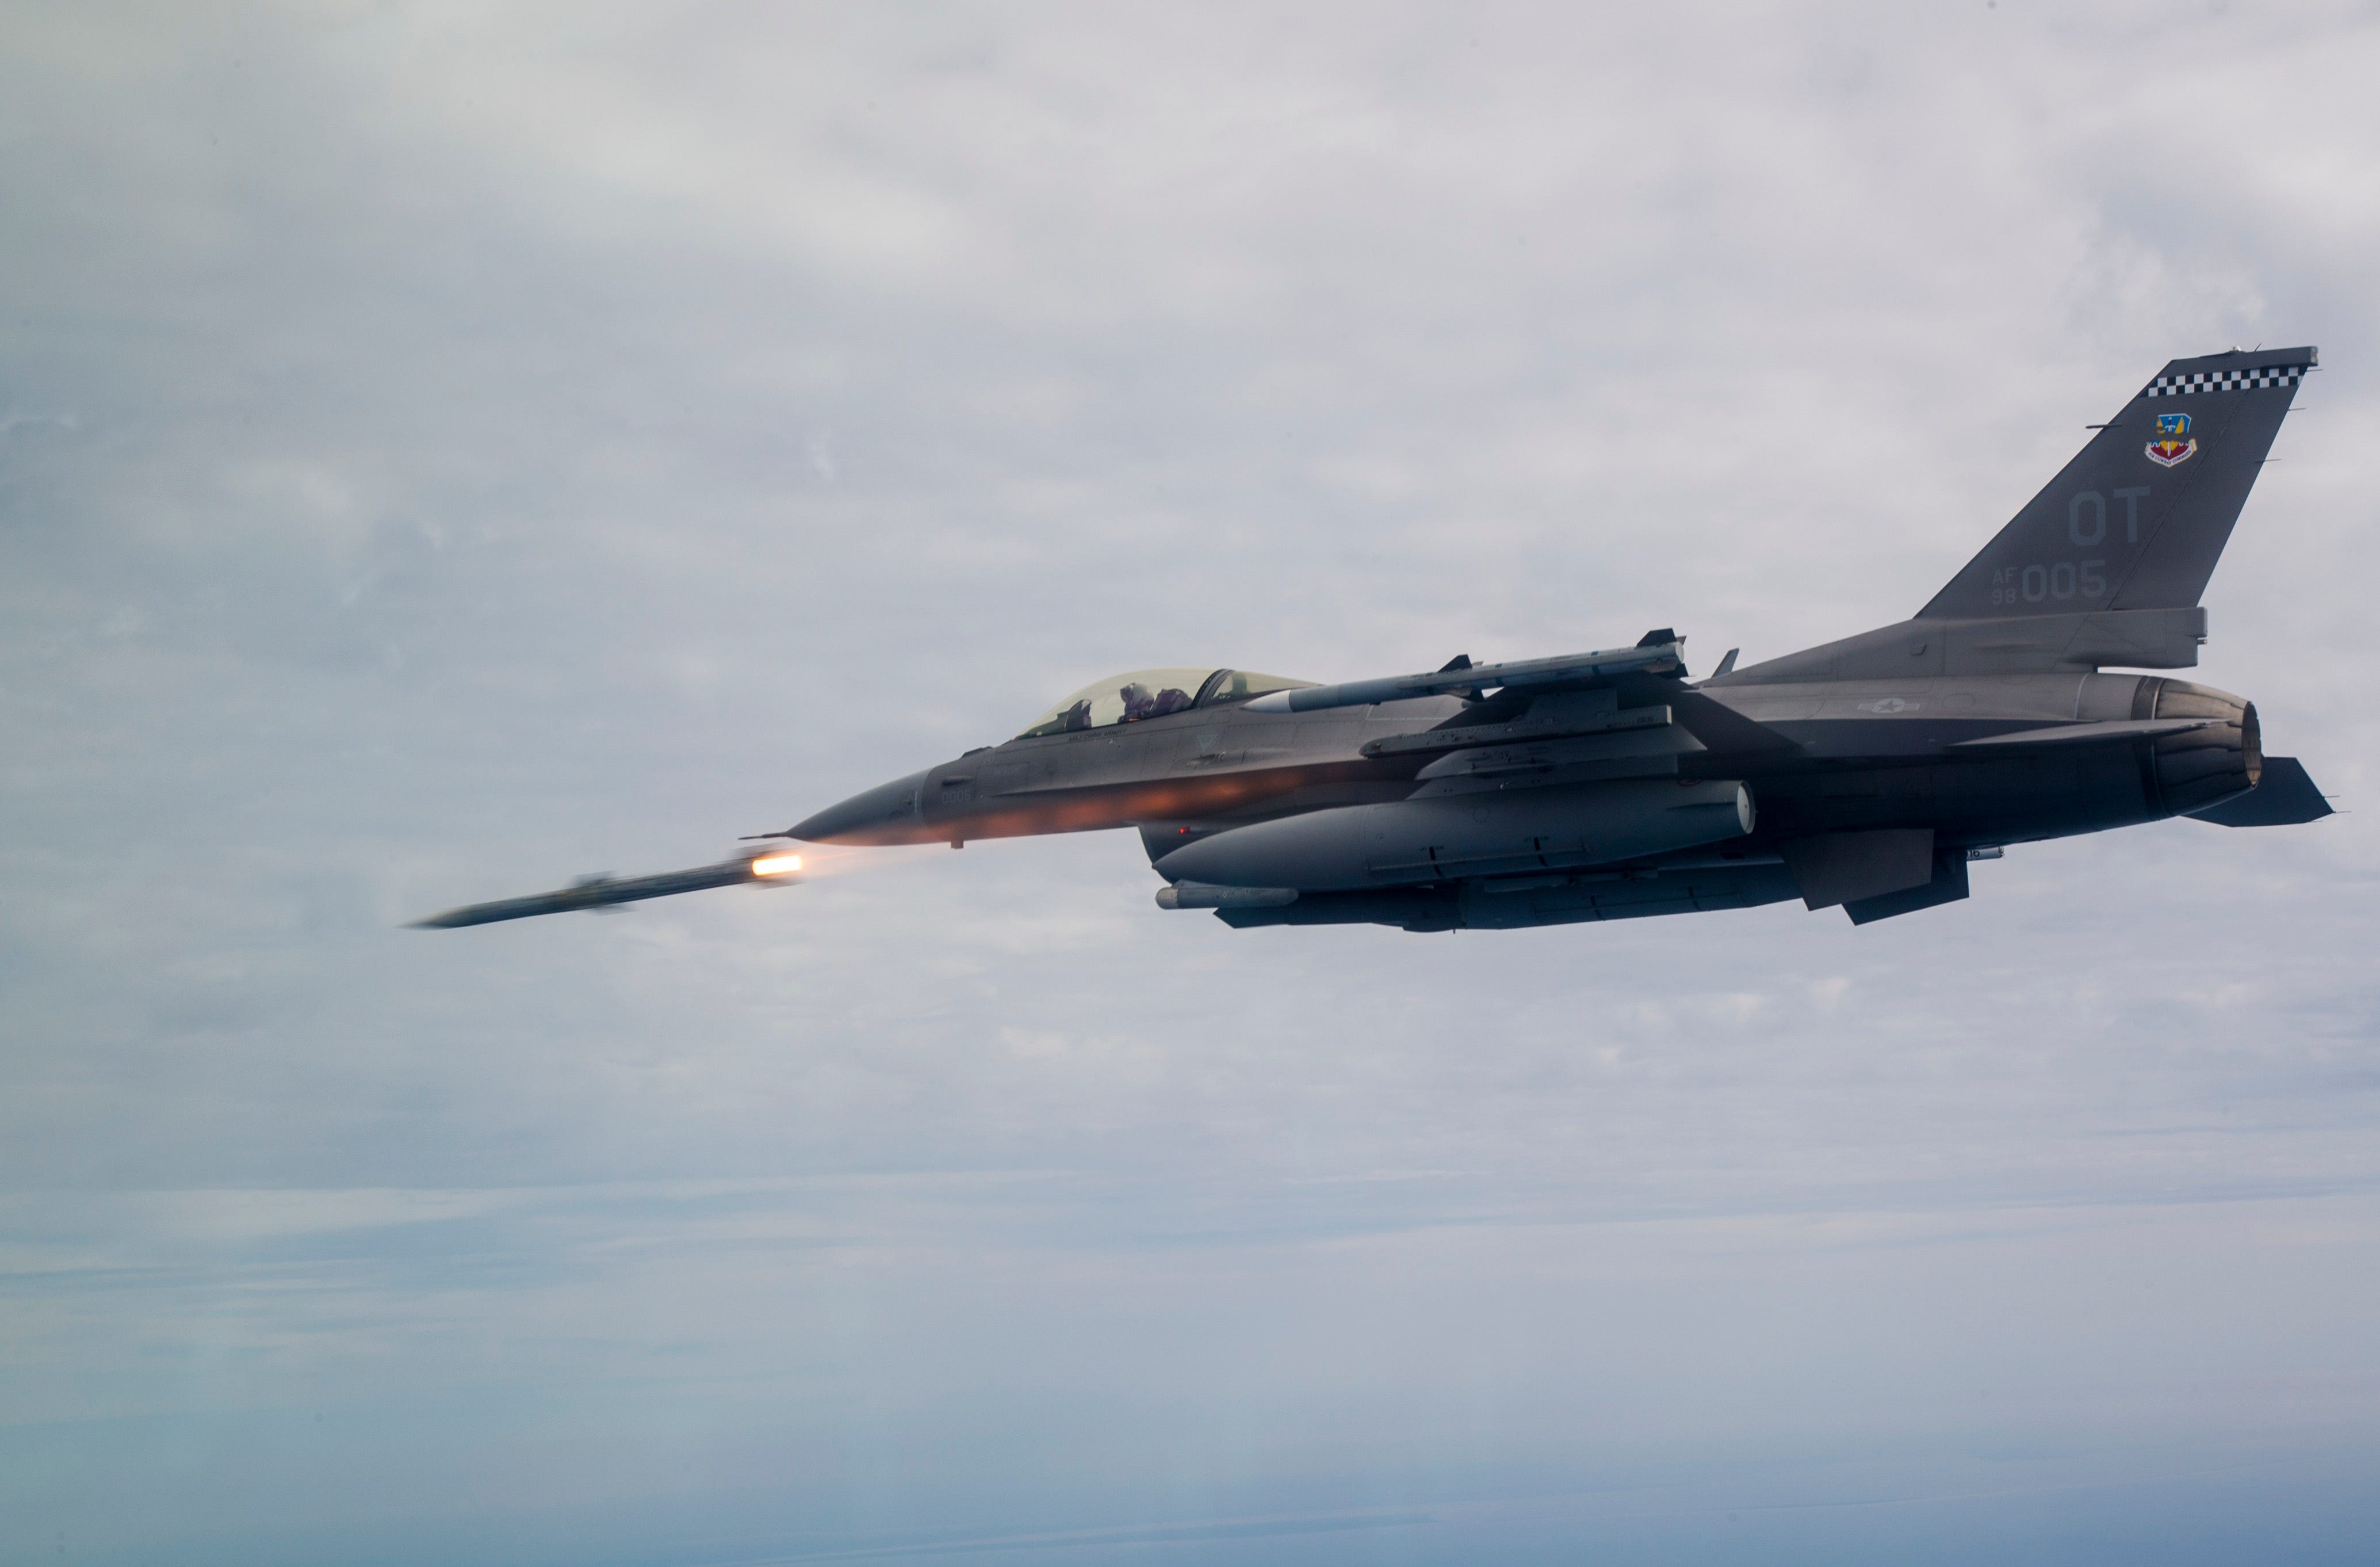 Eine F-16C Fighting Falcon, die dem 85. Test Evaluation Squadron zugeordnet ist, schießt am 19. März 2019 eine AIM-120 Advanced Medium-Range Air-to-Air Missile (AMRAAM) über Testgelände in der Nähe der Eglin Air Force Base, Florida.